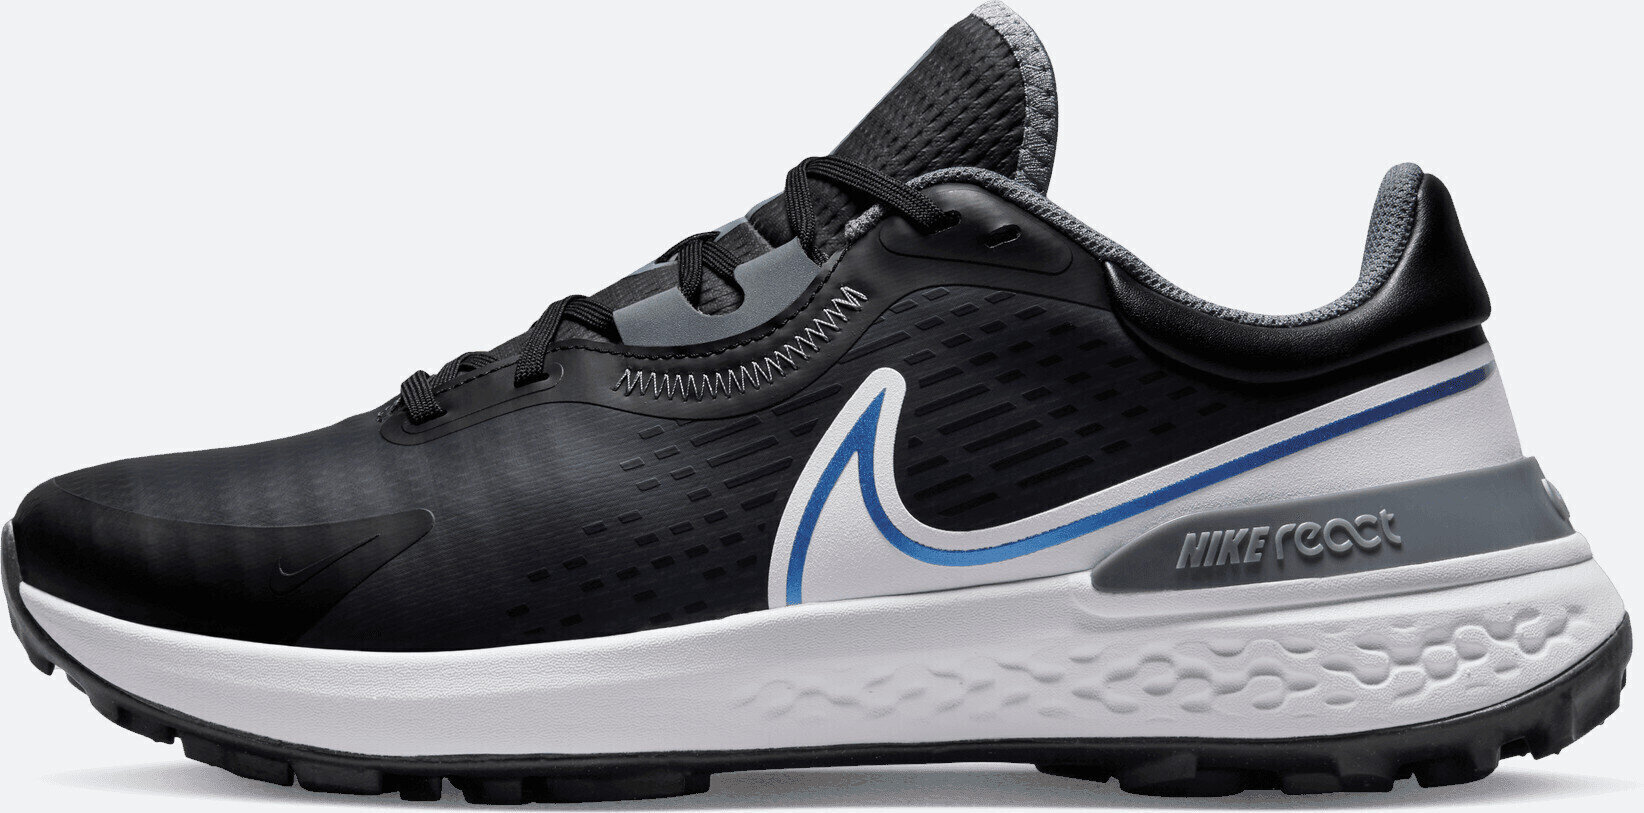 Calçado de golfe para homem Nike Infinity Pro 2 Mens Golf Shoes Anthracite/Black/White/Cool Grey 45,5